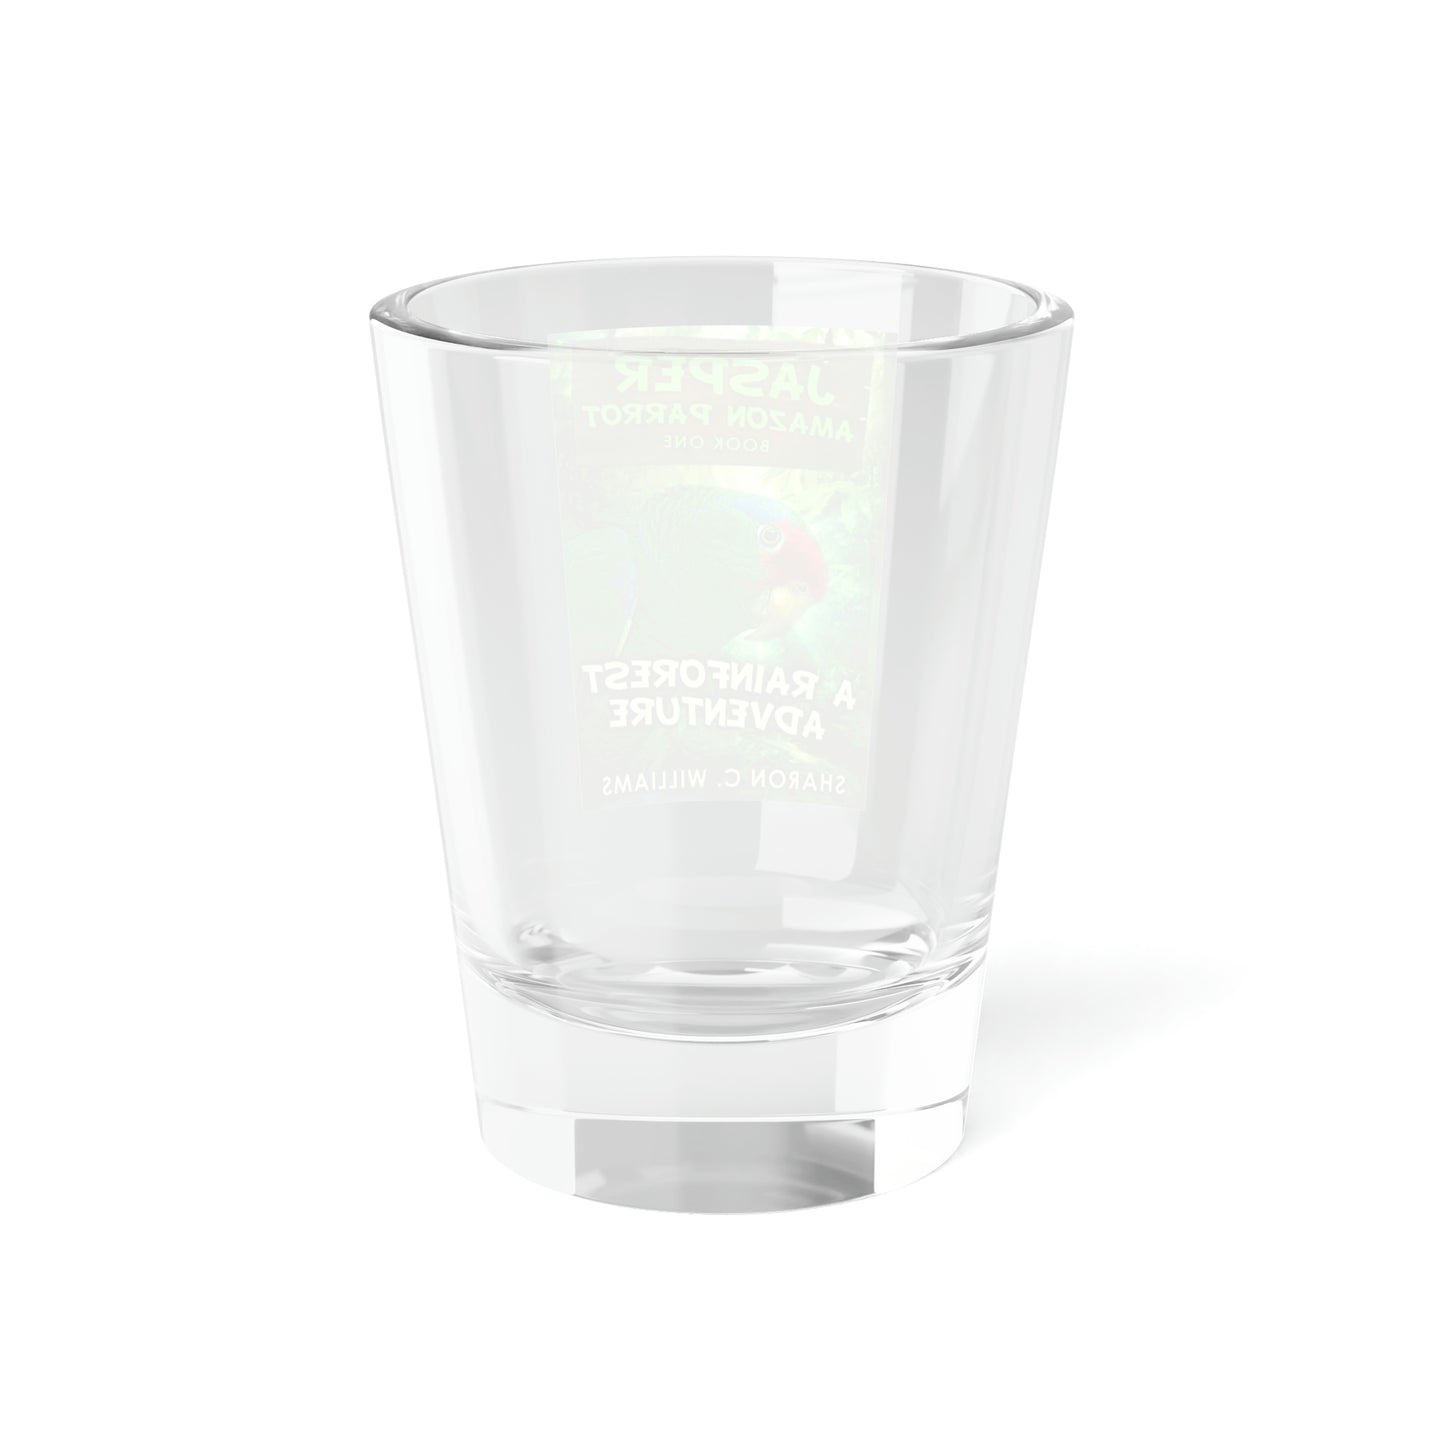 A Rainforest Adventure - Shot Glass, 1.5oz